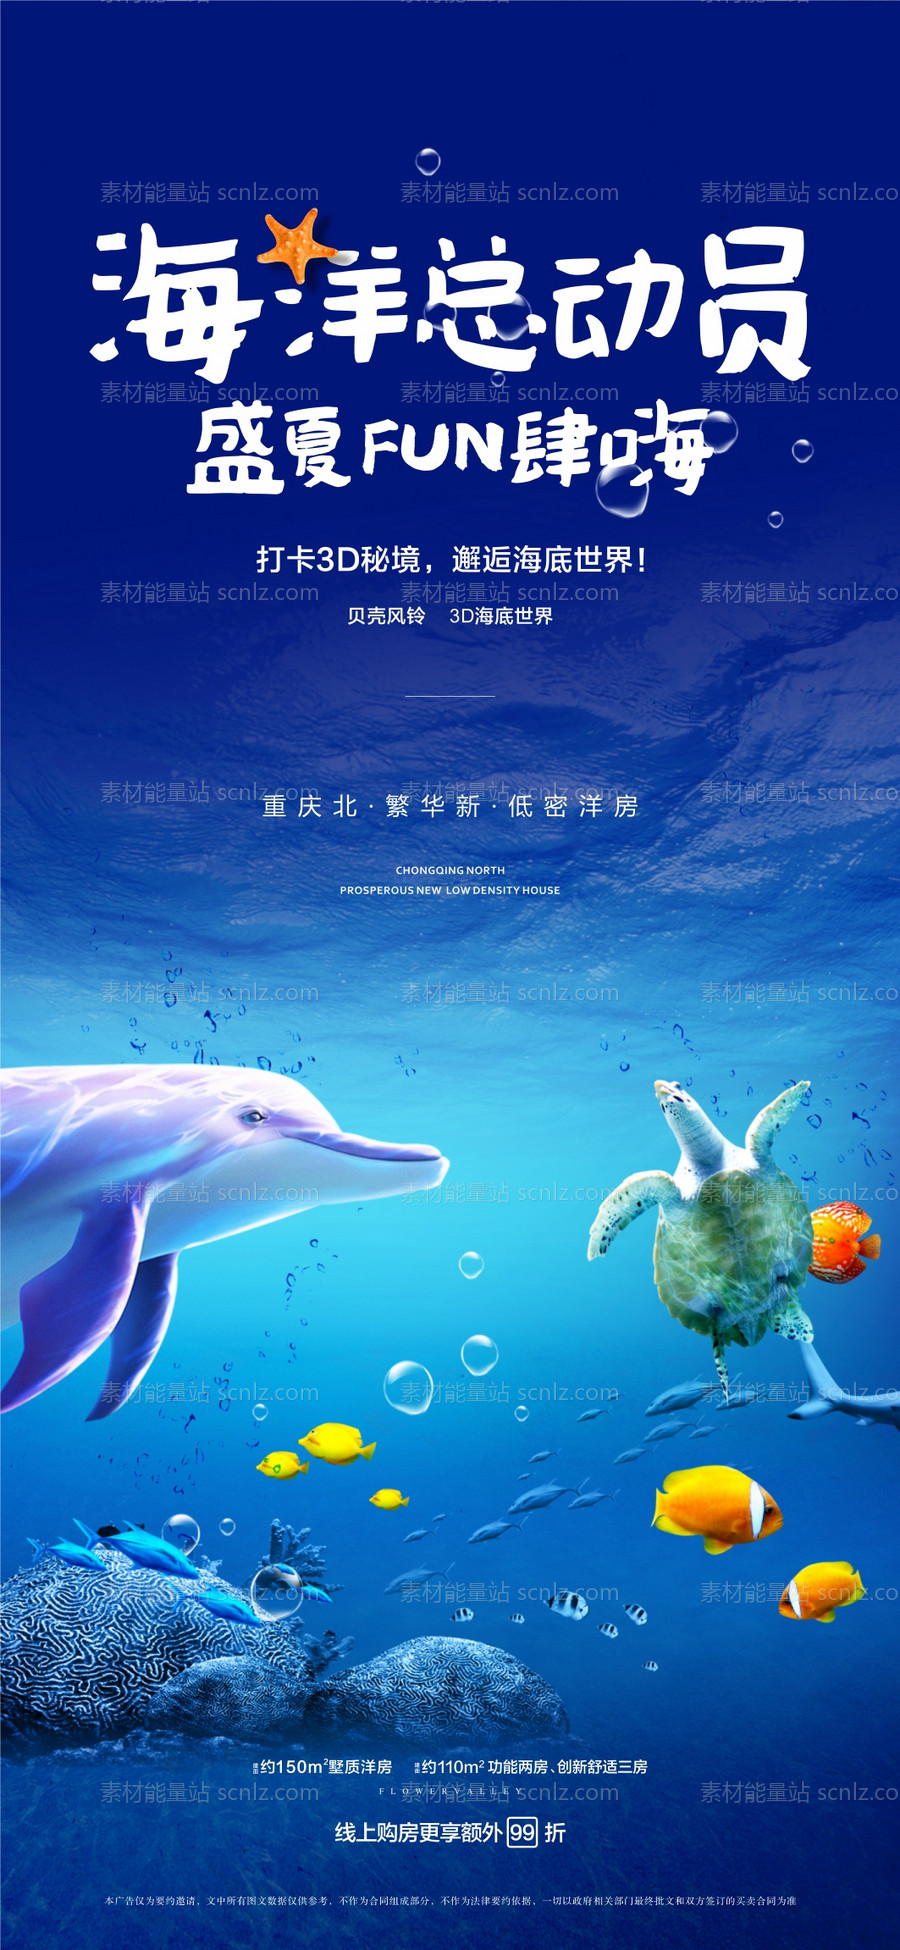 素材能量站-地产海洋总动员活动海报